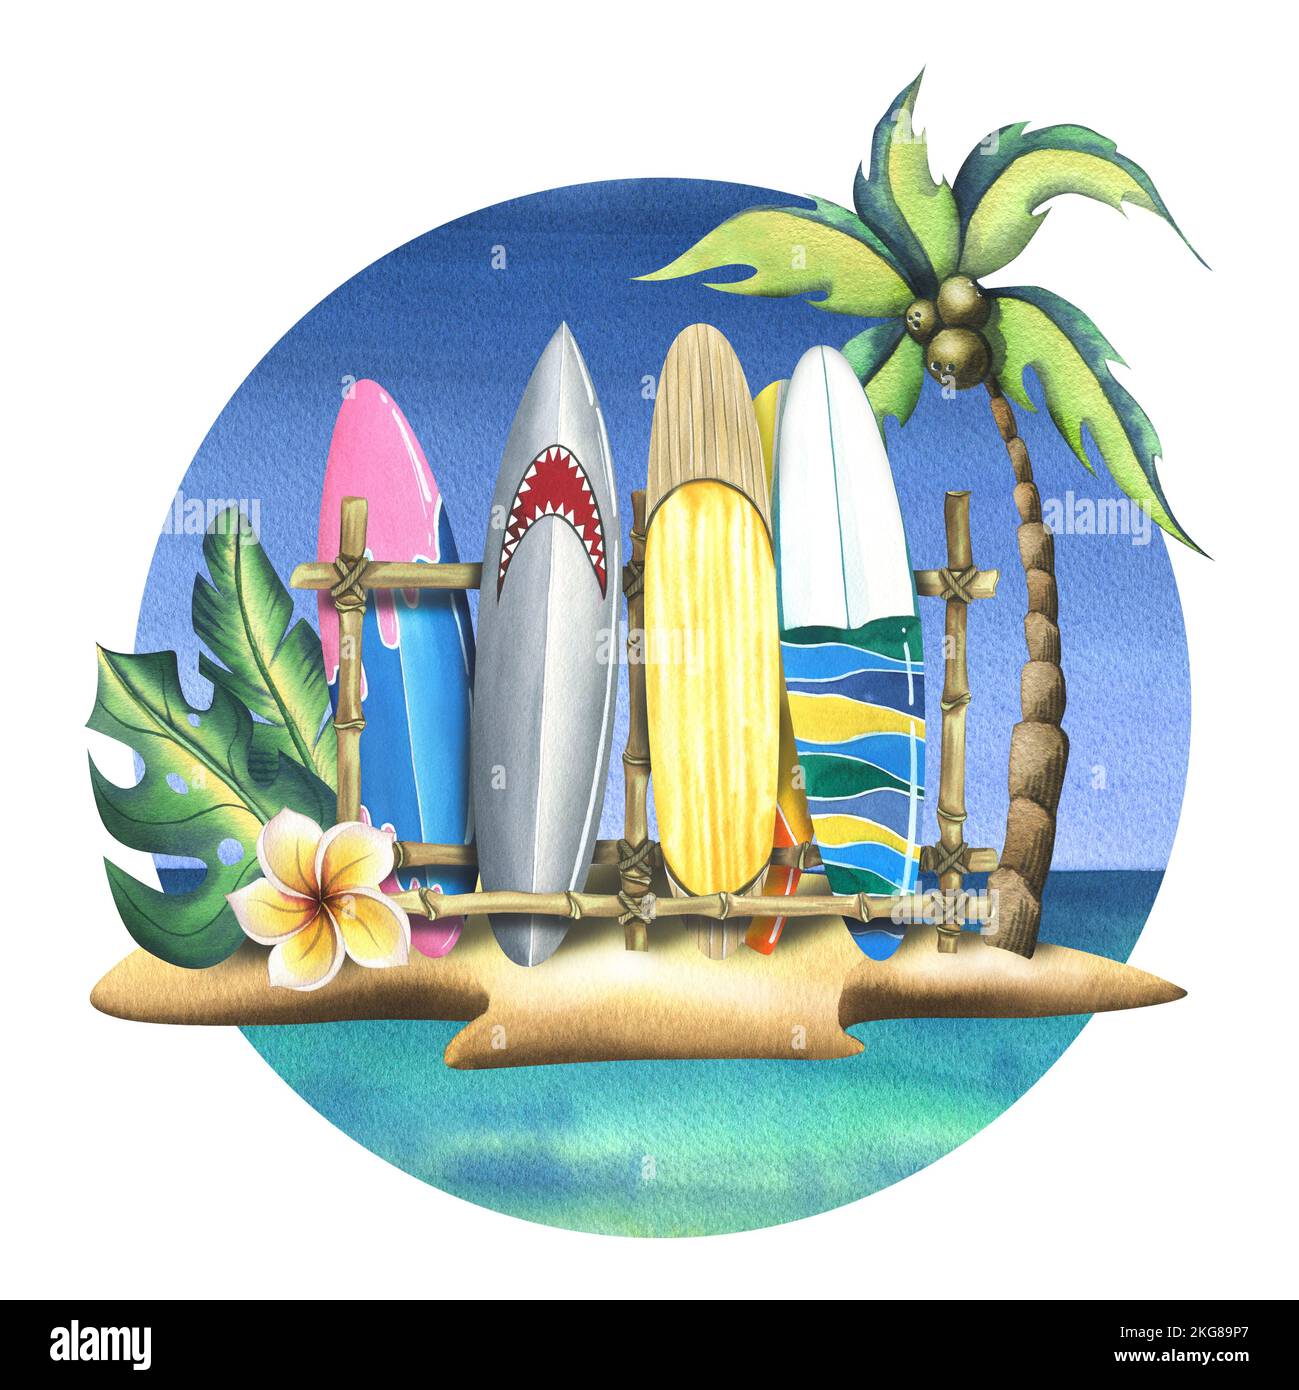 Eine tropische Insel mit einer Kokospalme, Plumeria-Blütenblättern und Surfbrettern auf einem Stand. Aquarelle Illustration im Cartoon-Stil. Komposition aus Stockfoto